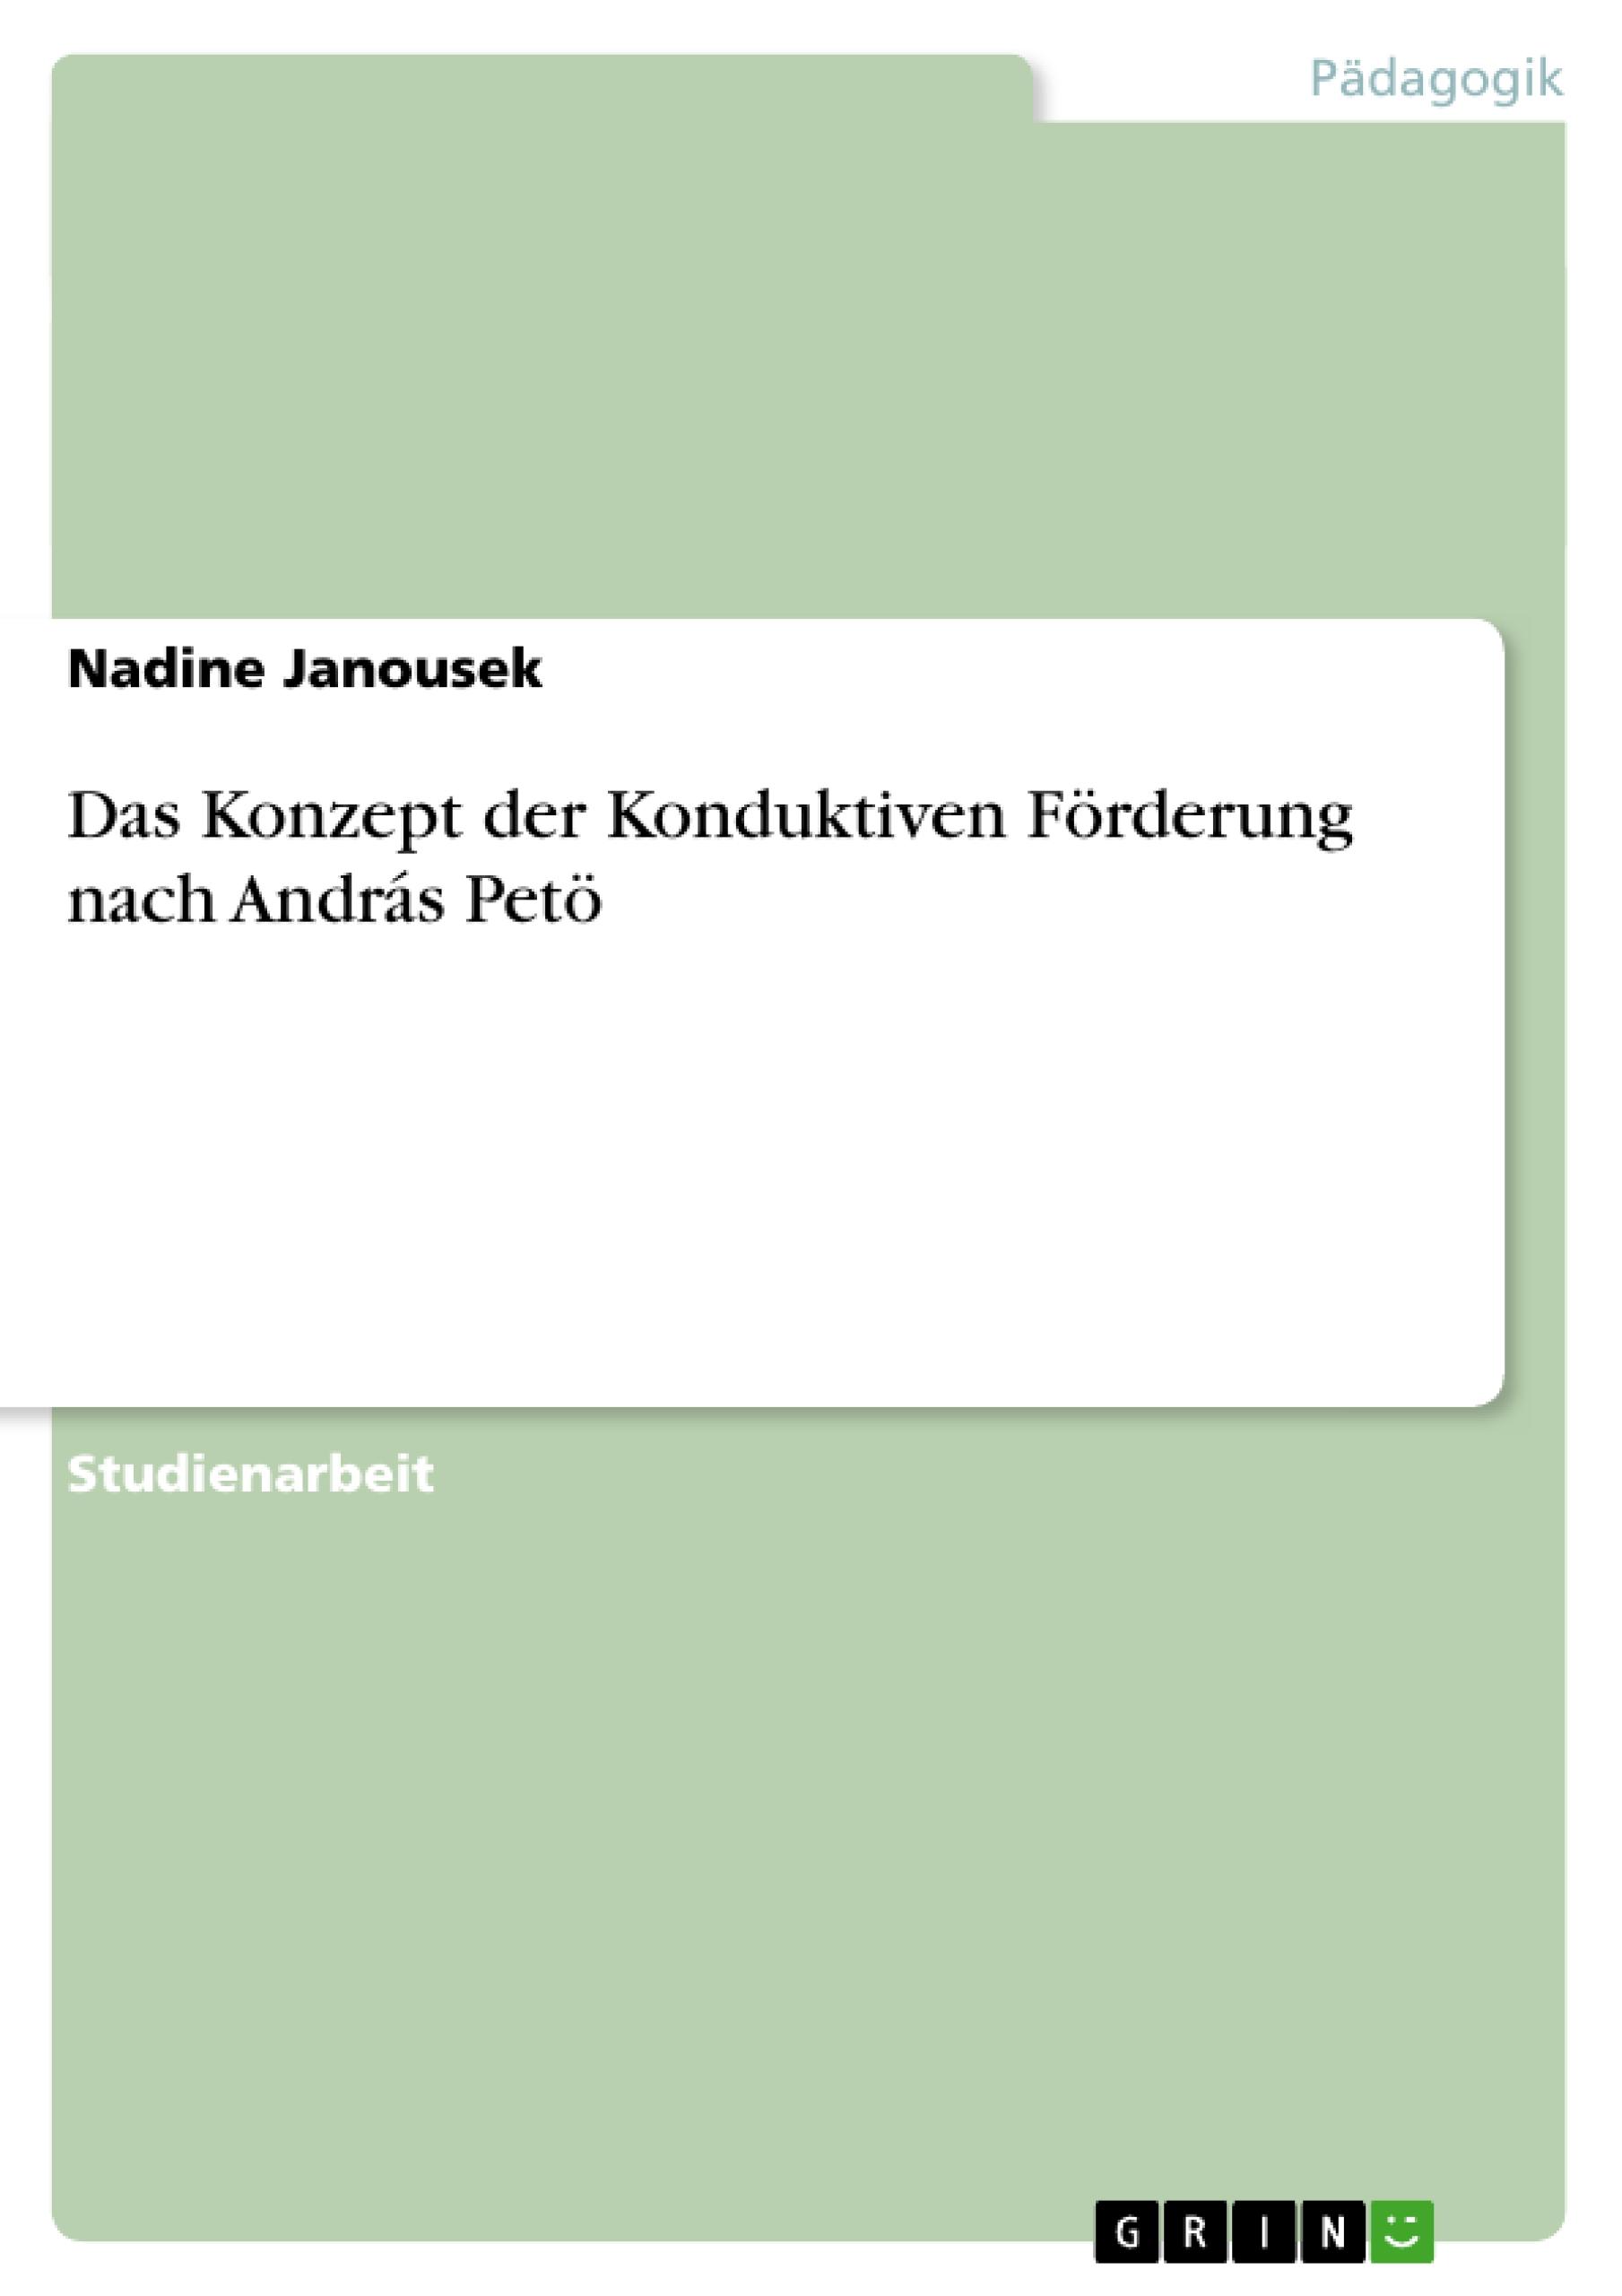 Das Konzept der Konduktiven Foerderung nach András Petoe - Janousek, Nadine